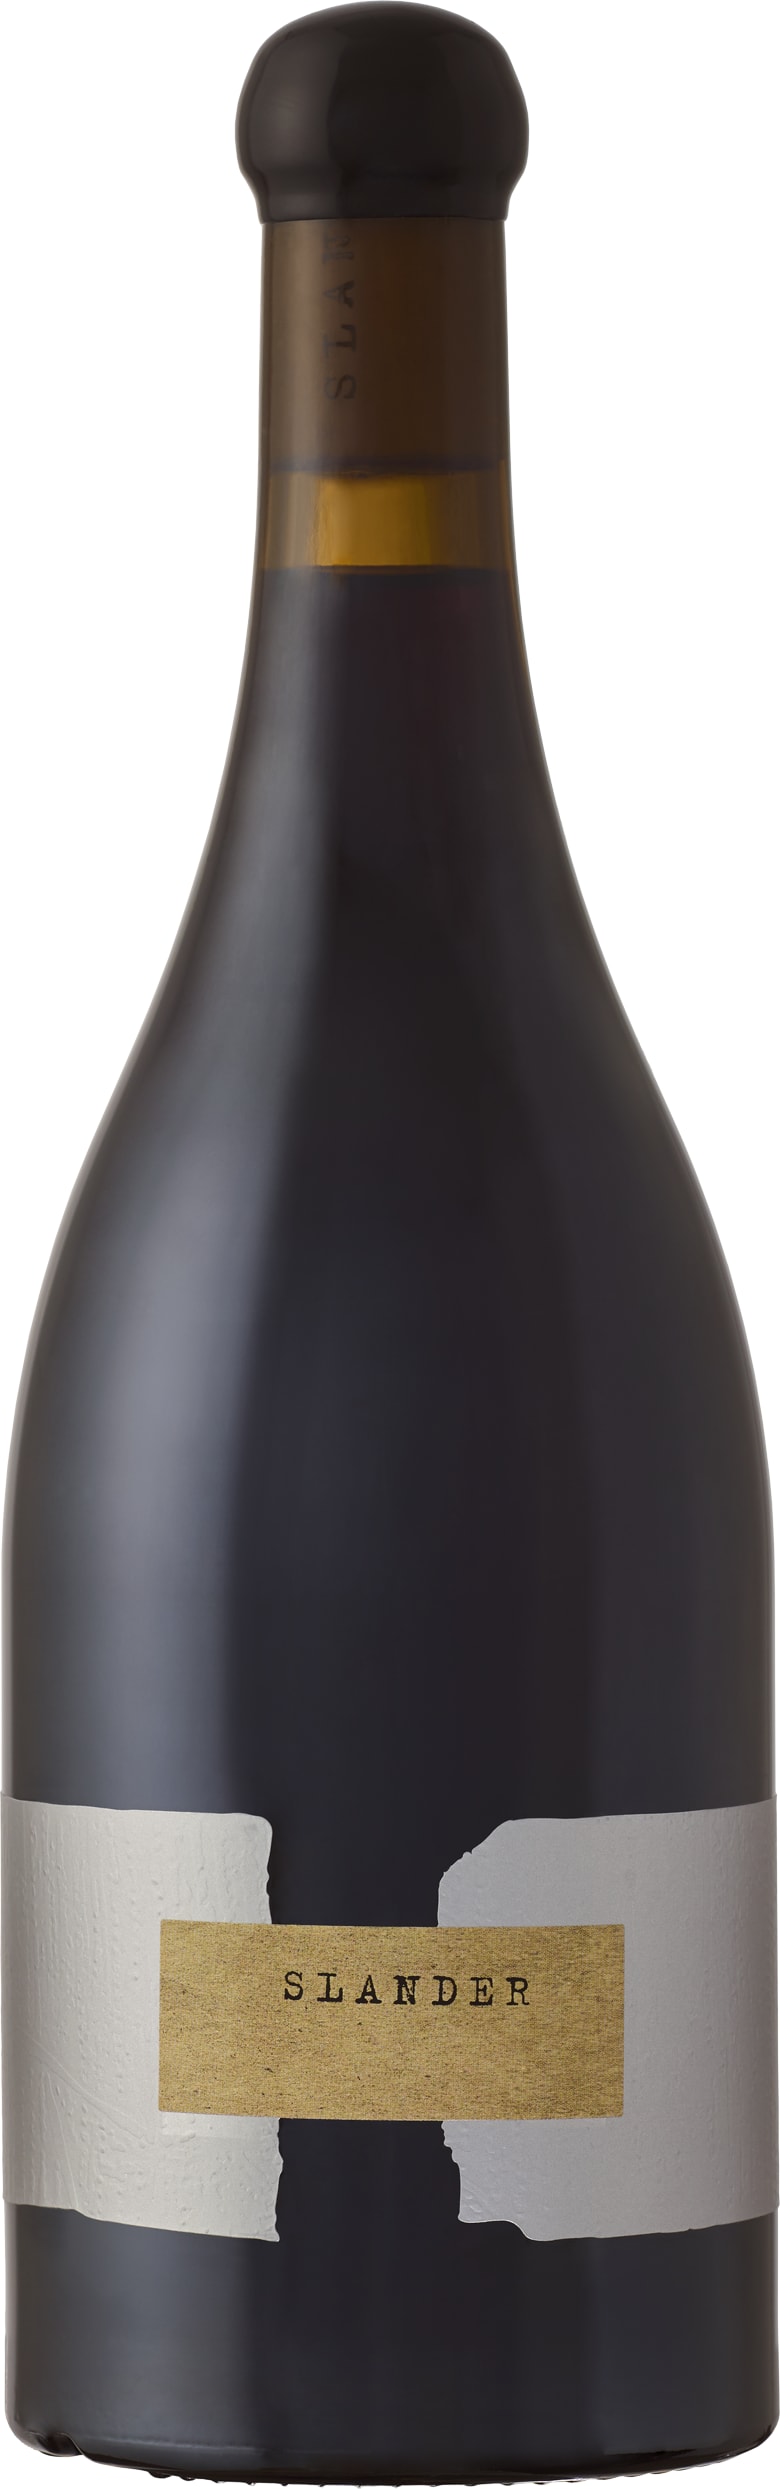 Orin Swift Slander Pinot Noir 2021 75cl - Buy Orin Swift Wines from GREAT WINES DIRECT wine shop